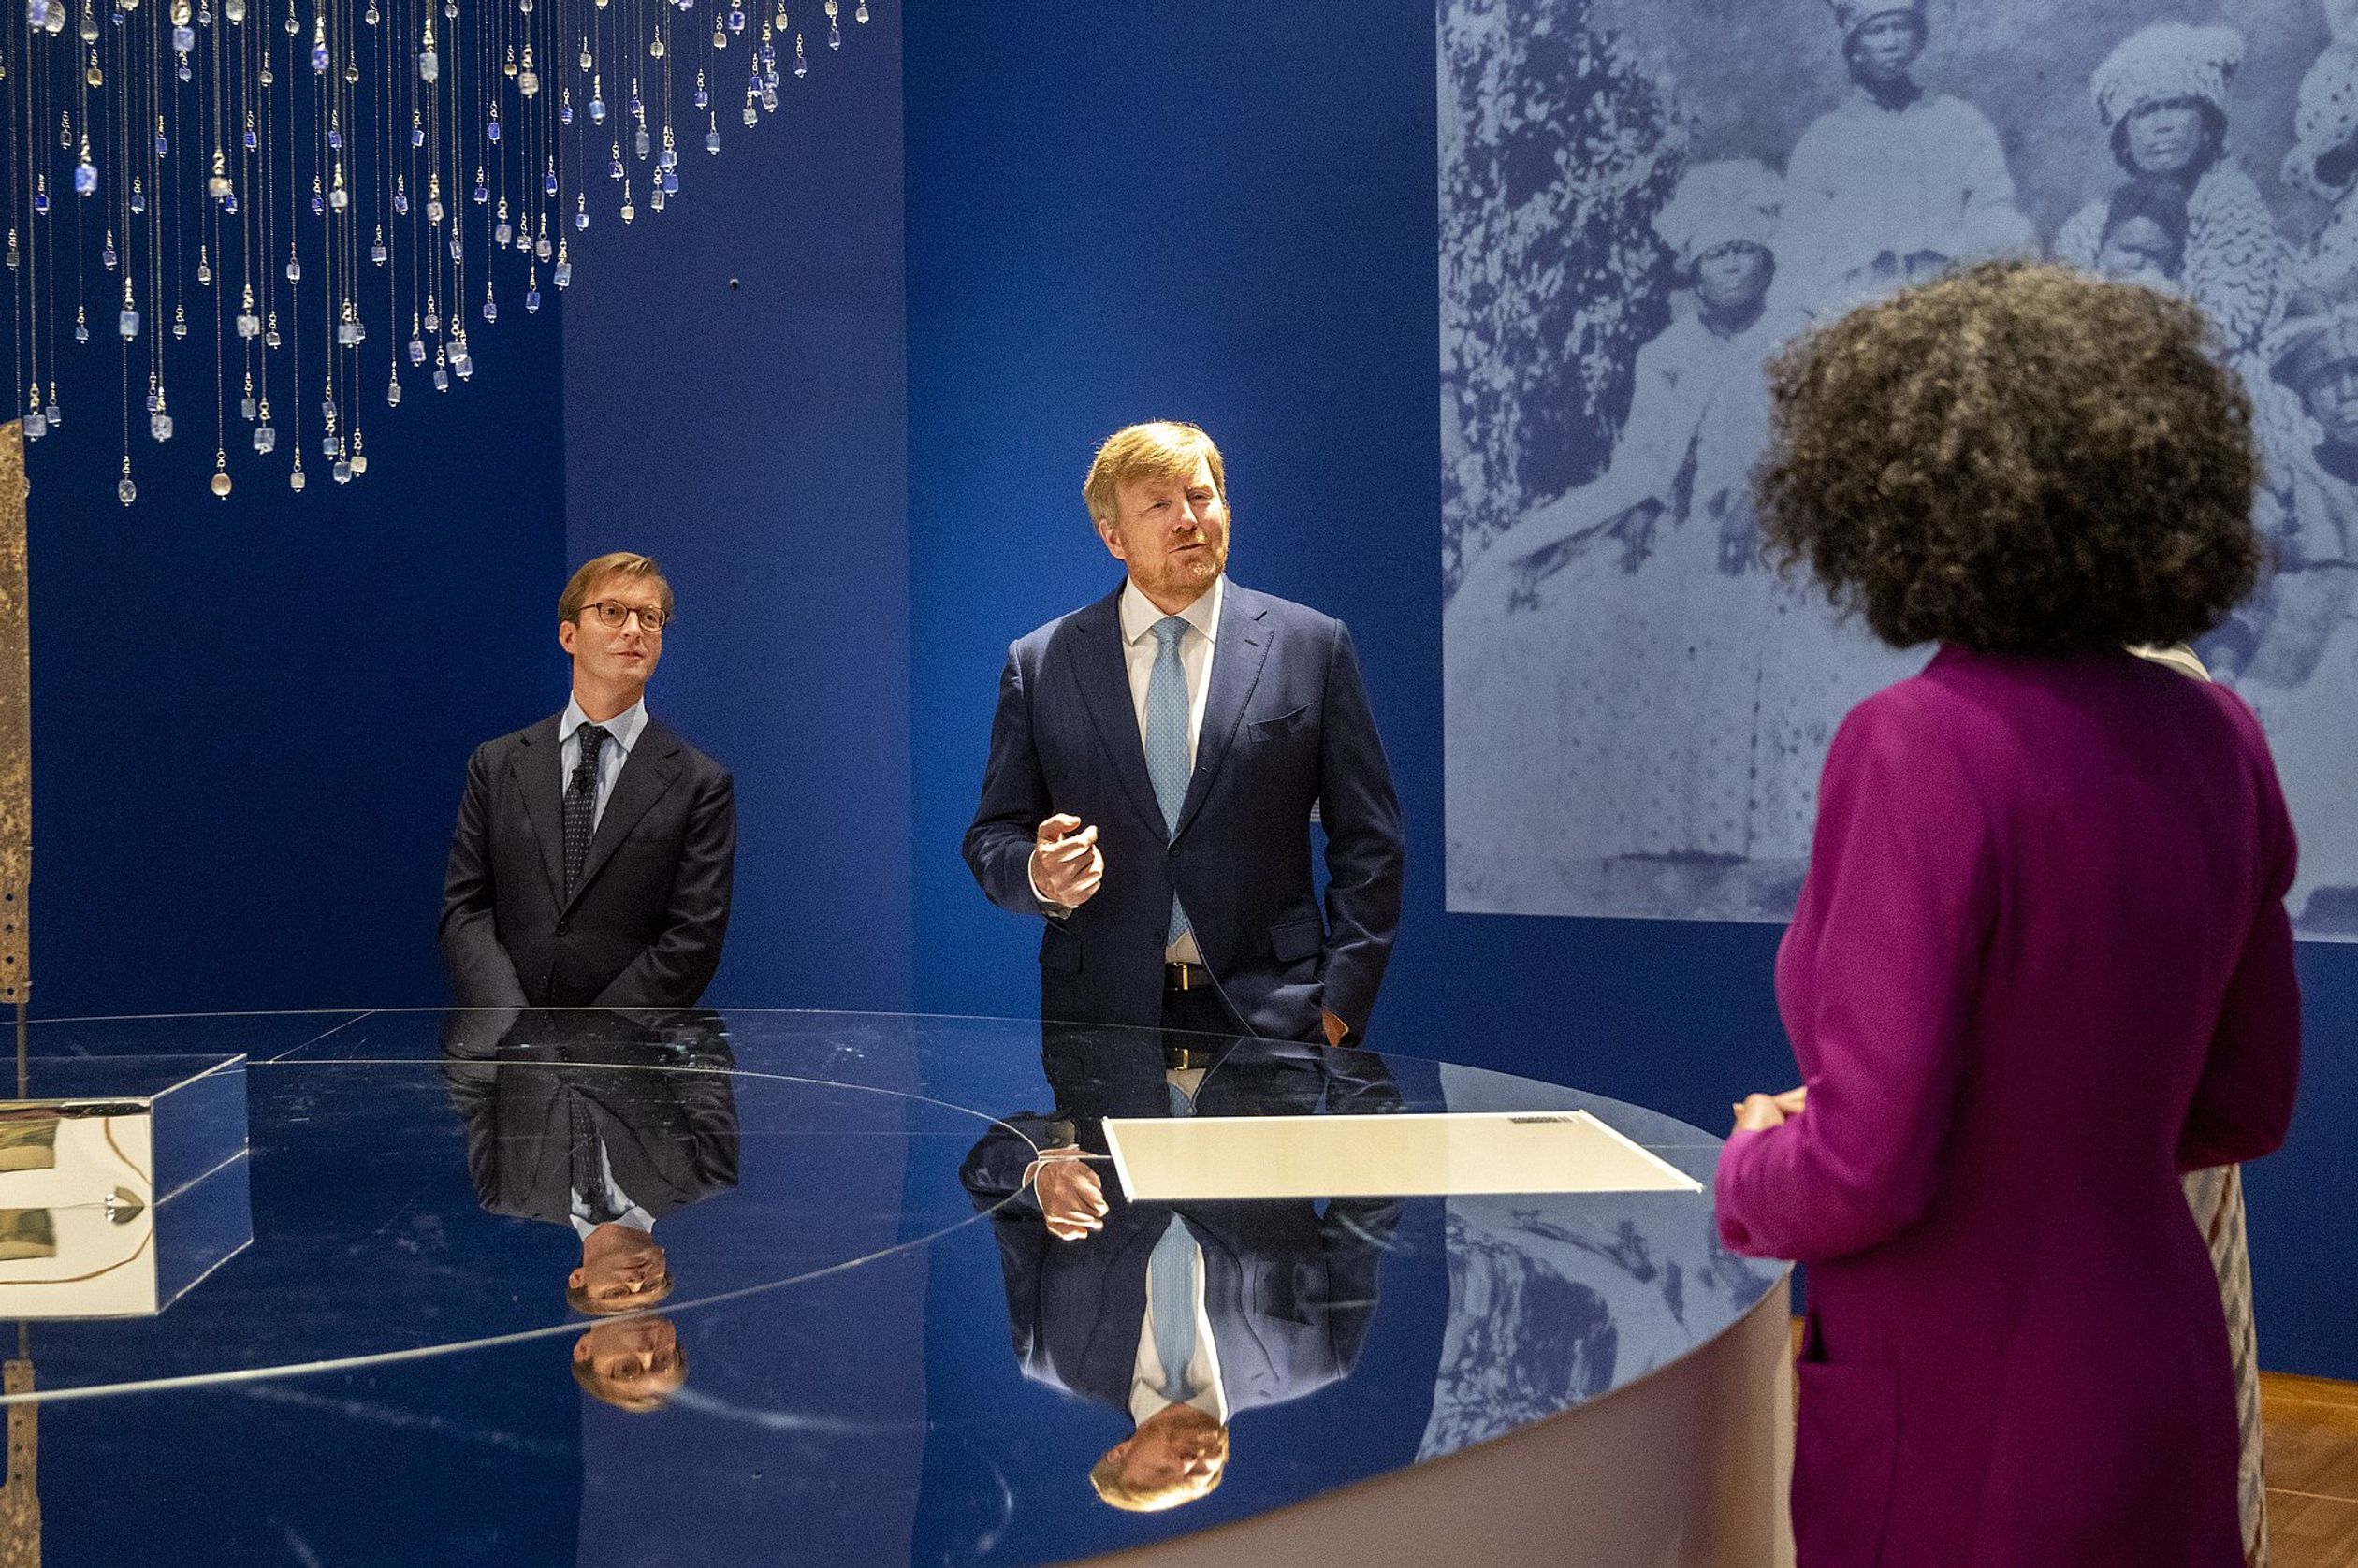 Koning opent expositie over Slavernij in Rijksmuseum